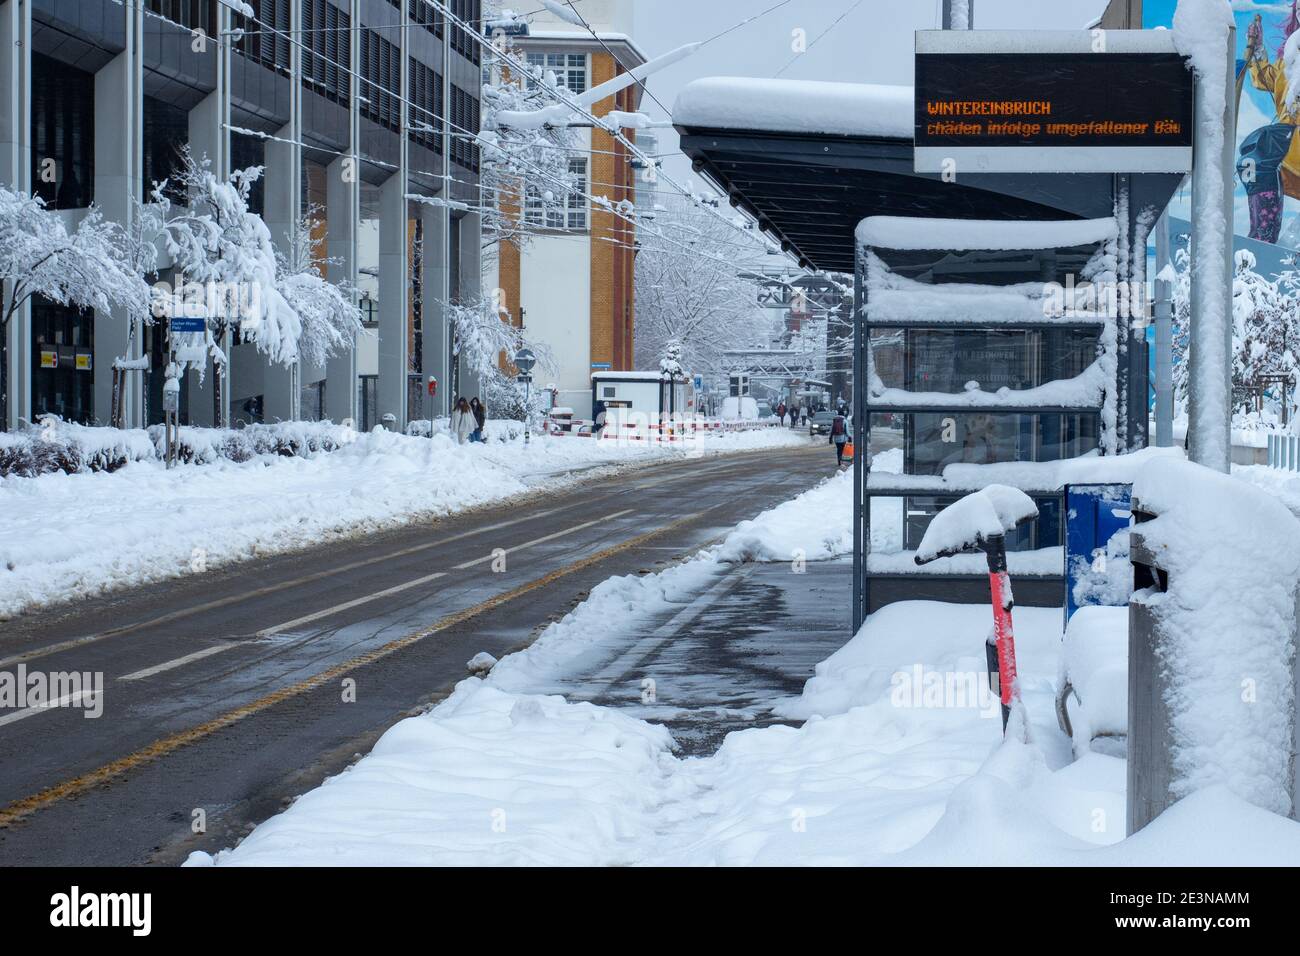 Zurigo, Svizzera - 15 gennaio 2021: Stazione del tram fuori servizio a causa della neve Foto Stock